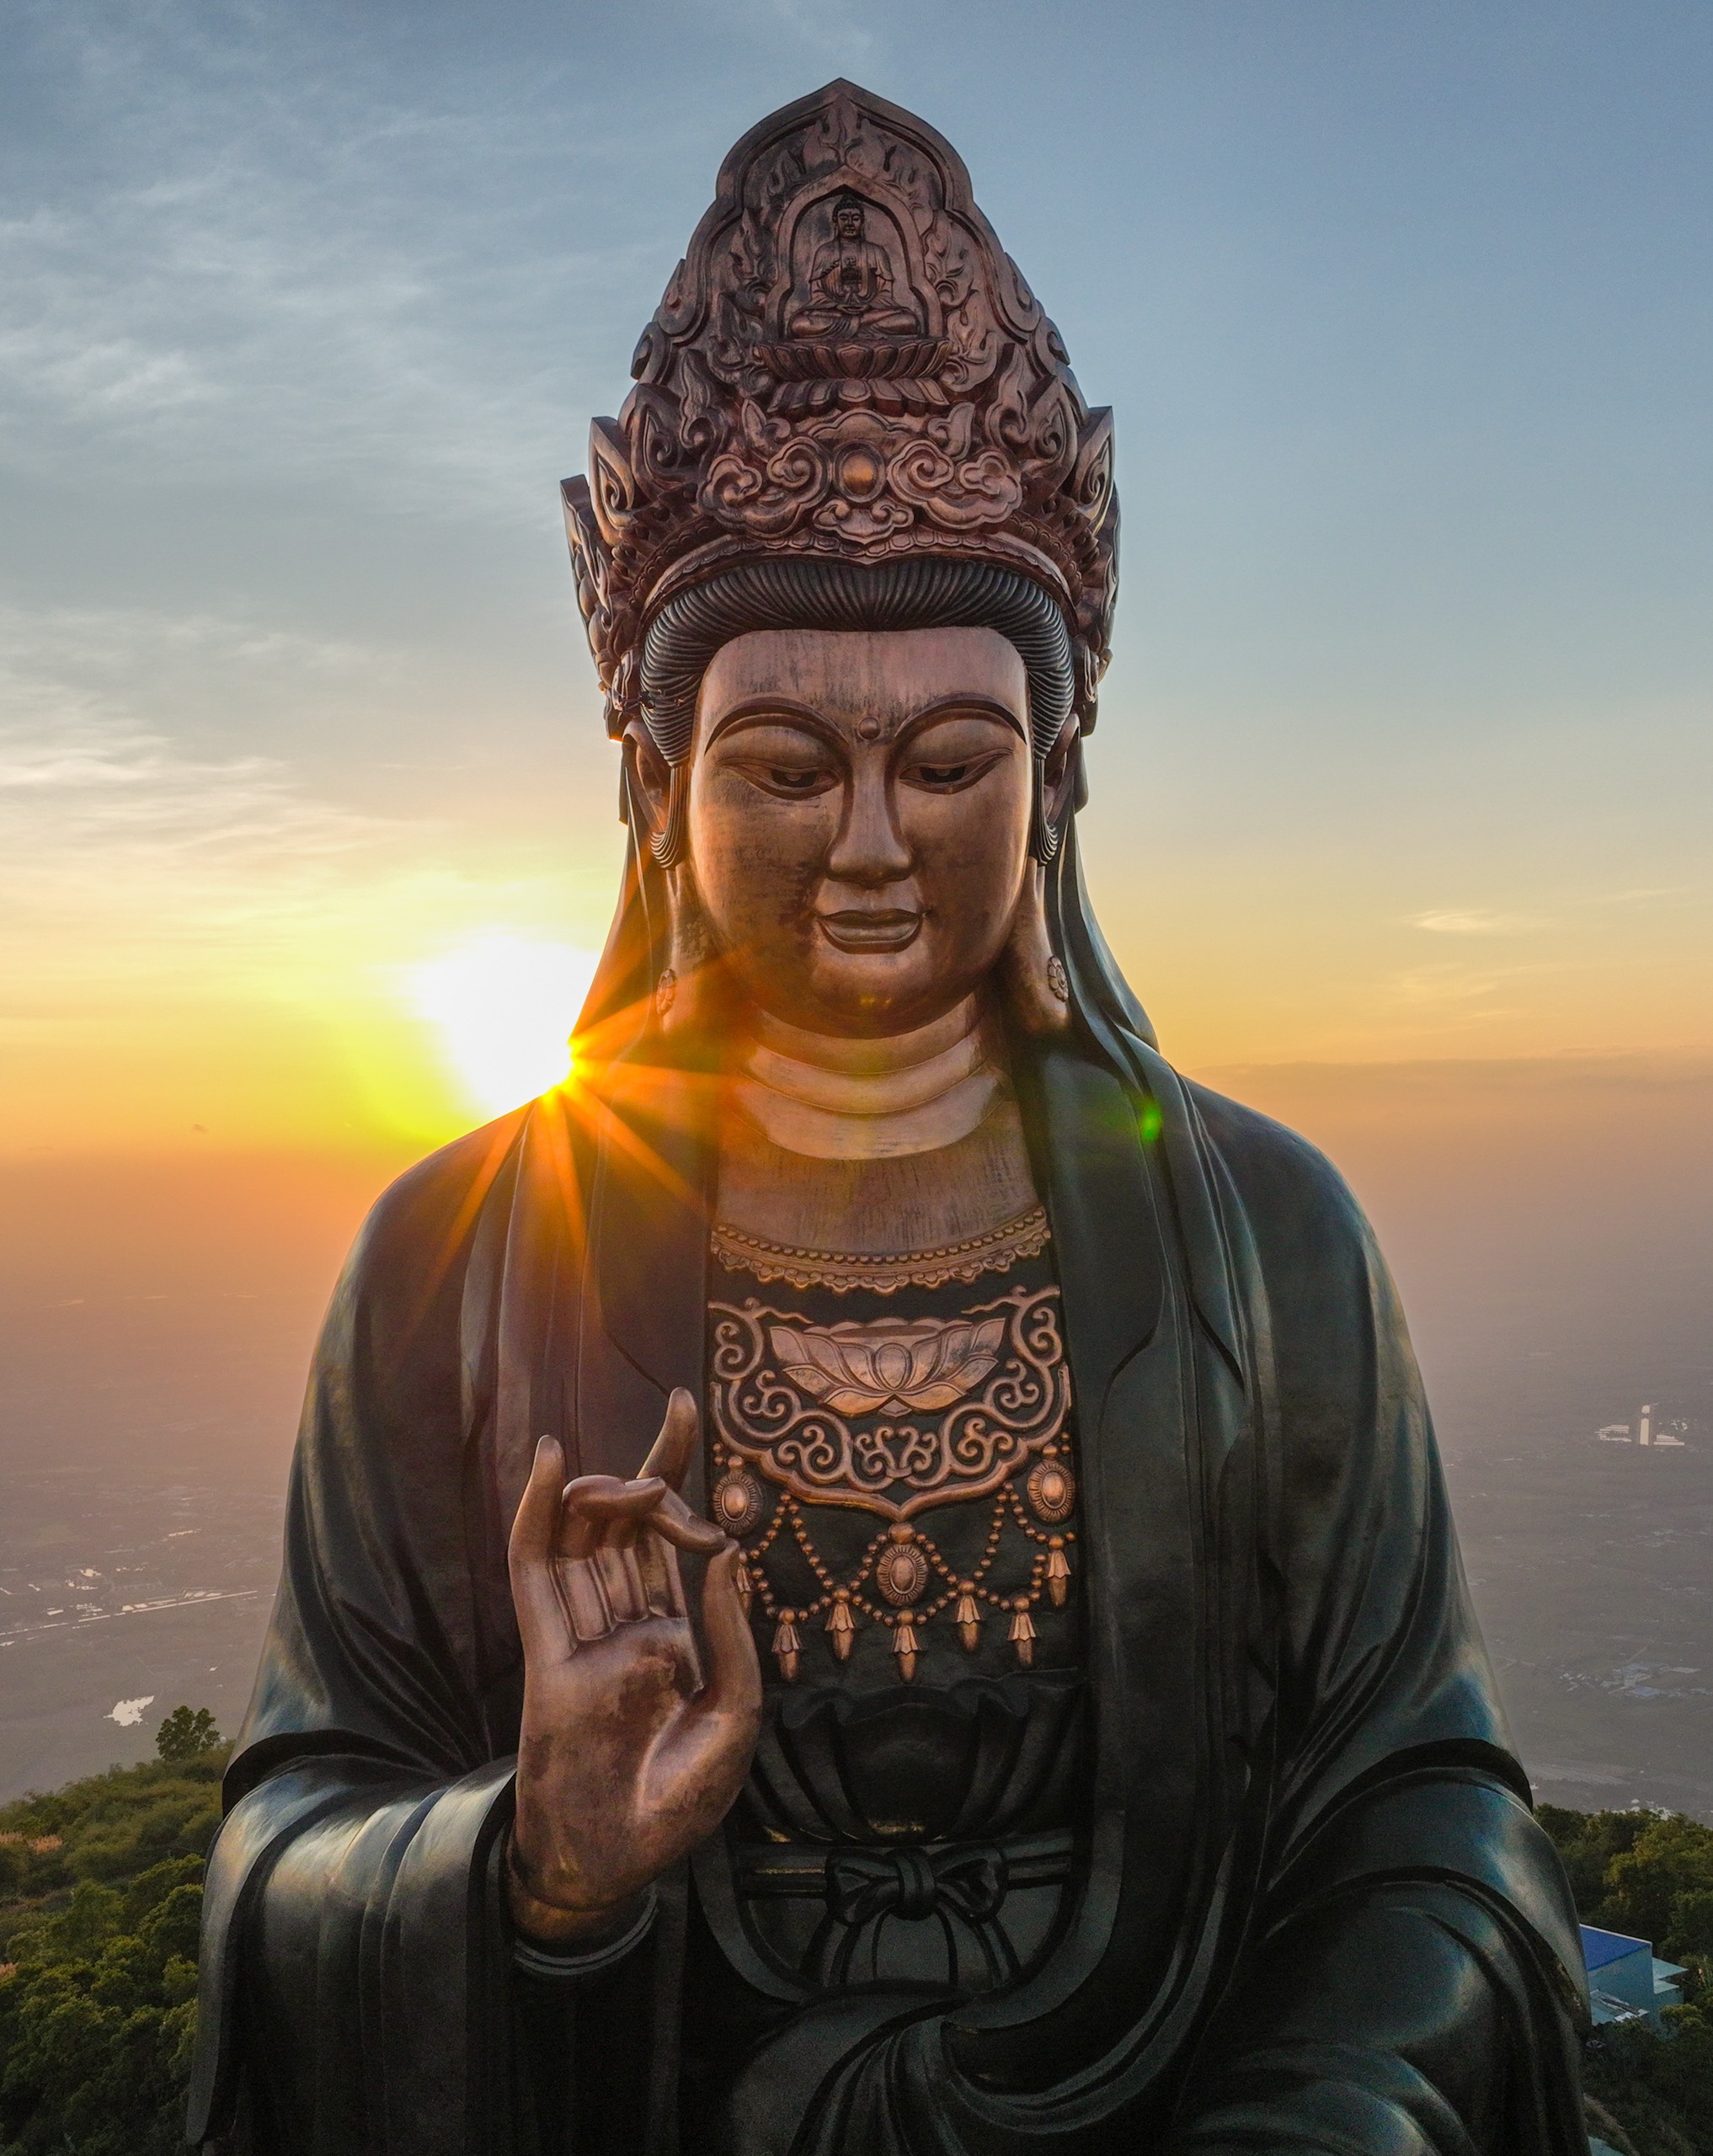 Chiêm bái tượng Phật Bà bằng đồng cao nhất châu Á trên đỉnh núi Bà Đen